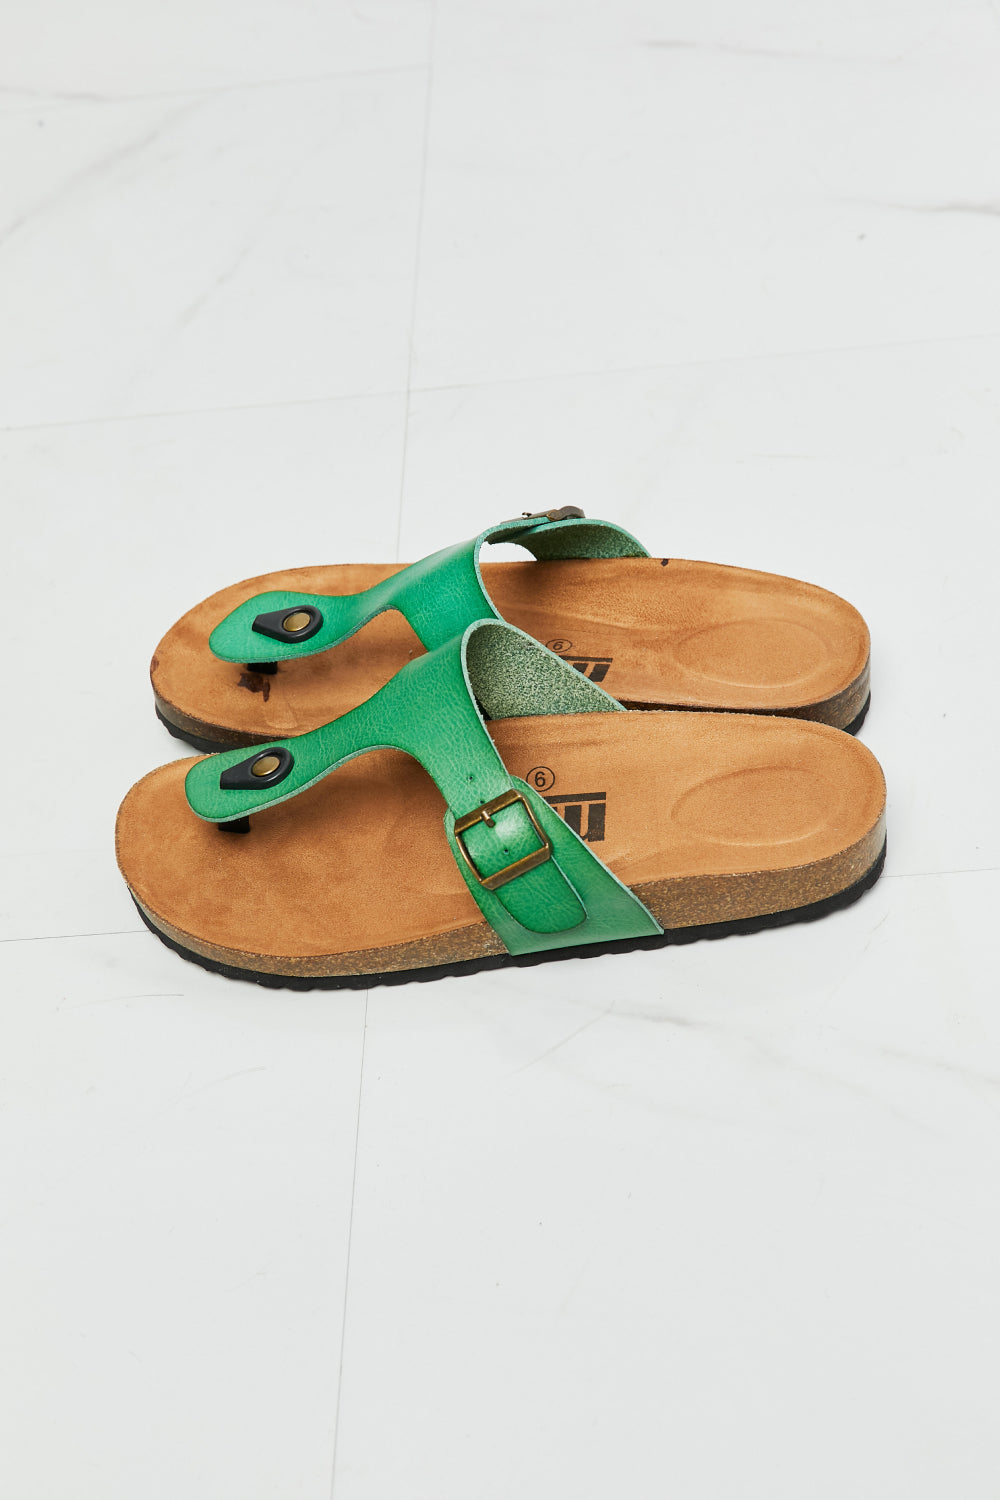 MMShoes T-Strap Flip-Flop Slide On Flat Cork Footbed Comfort Sandals in Green Drift Away